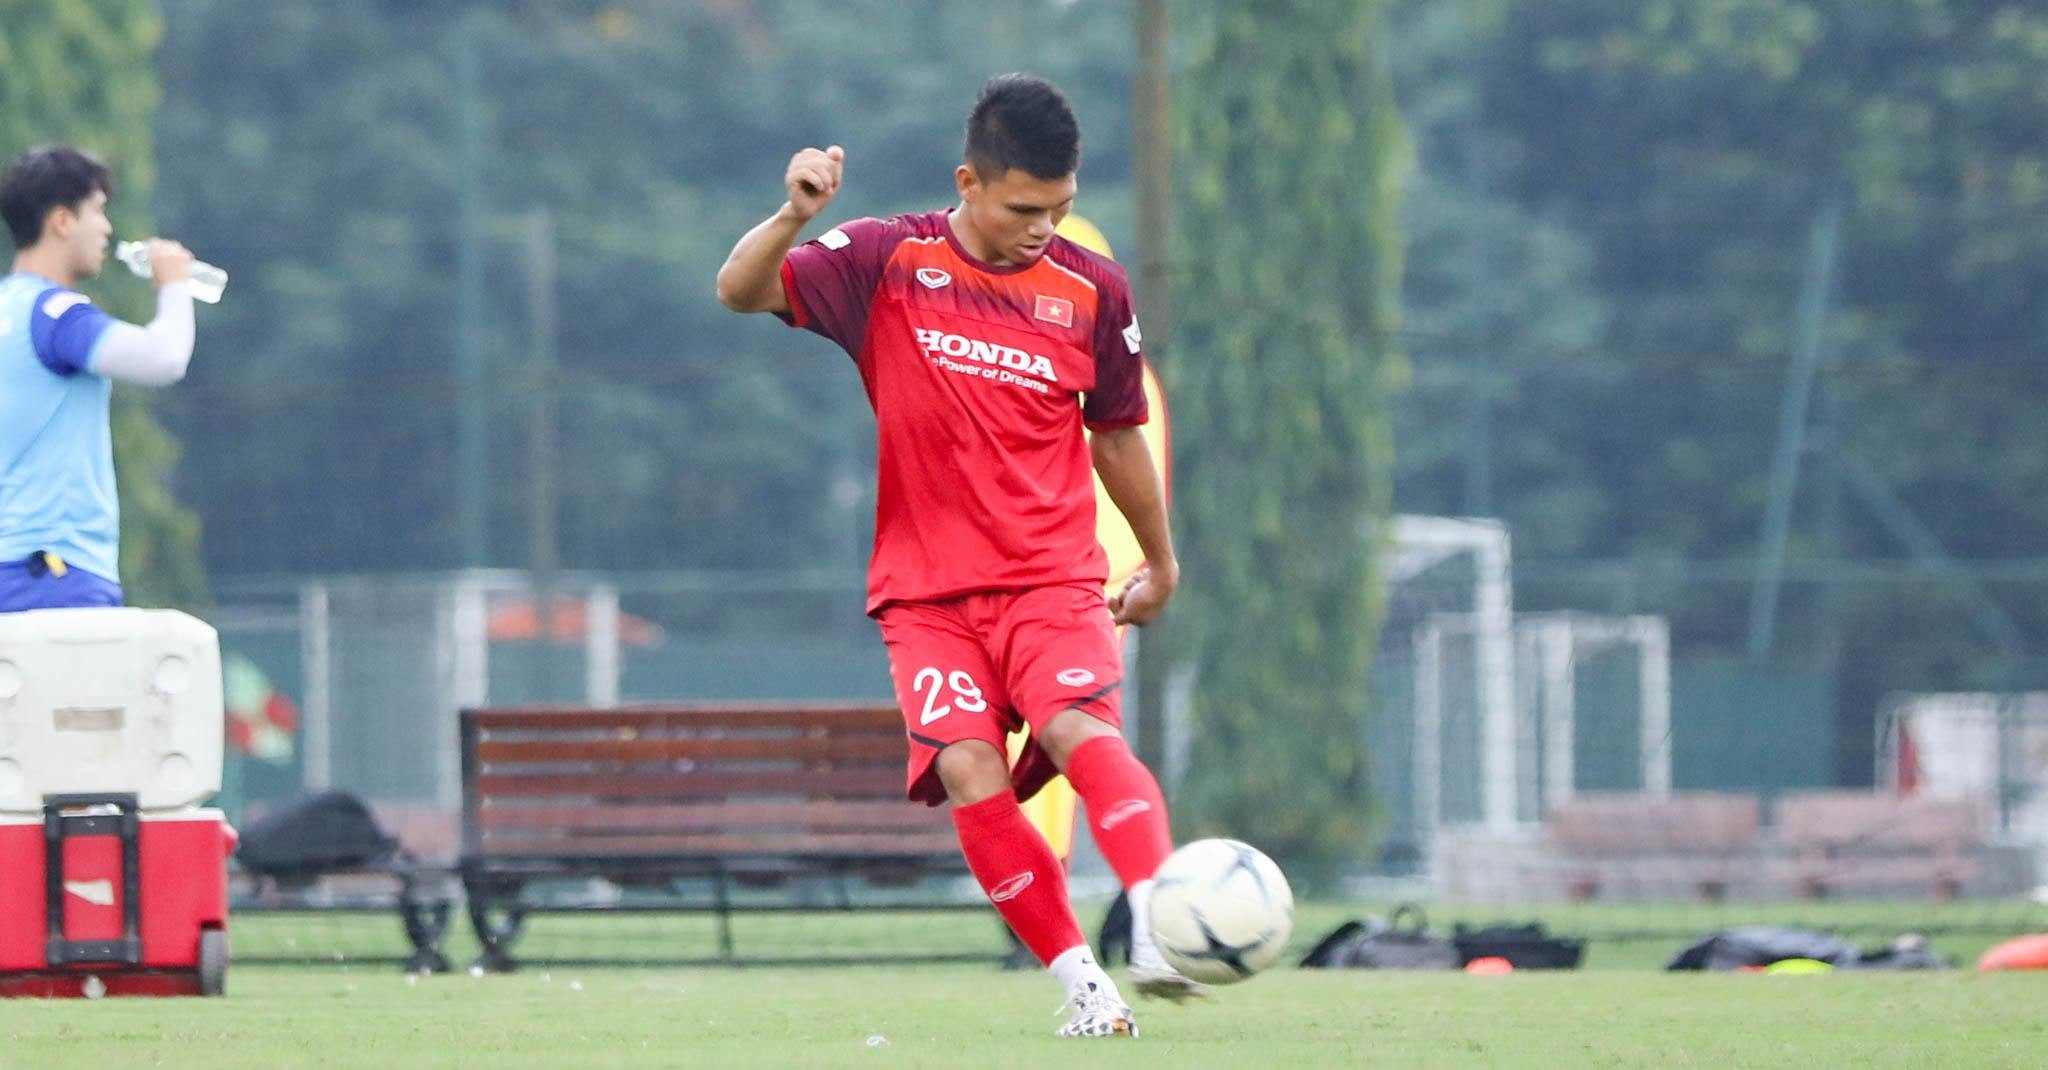 Trước khi lên tuyển, Phạm Xuân Mạnh đã có 1 bàn thắng tại V.League 2019. Vì có thể chơi được cả hai cánh, anh có khả năng cao được HLV Park điền tên vào sanh sách 23 cầu thủ chính thức. Ảnh: Như Đạt